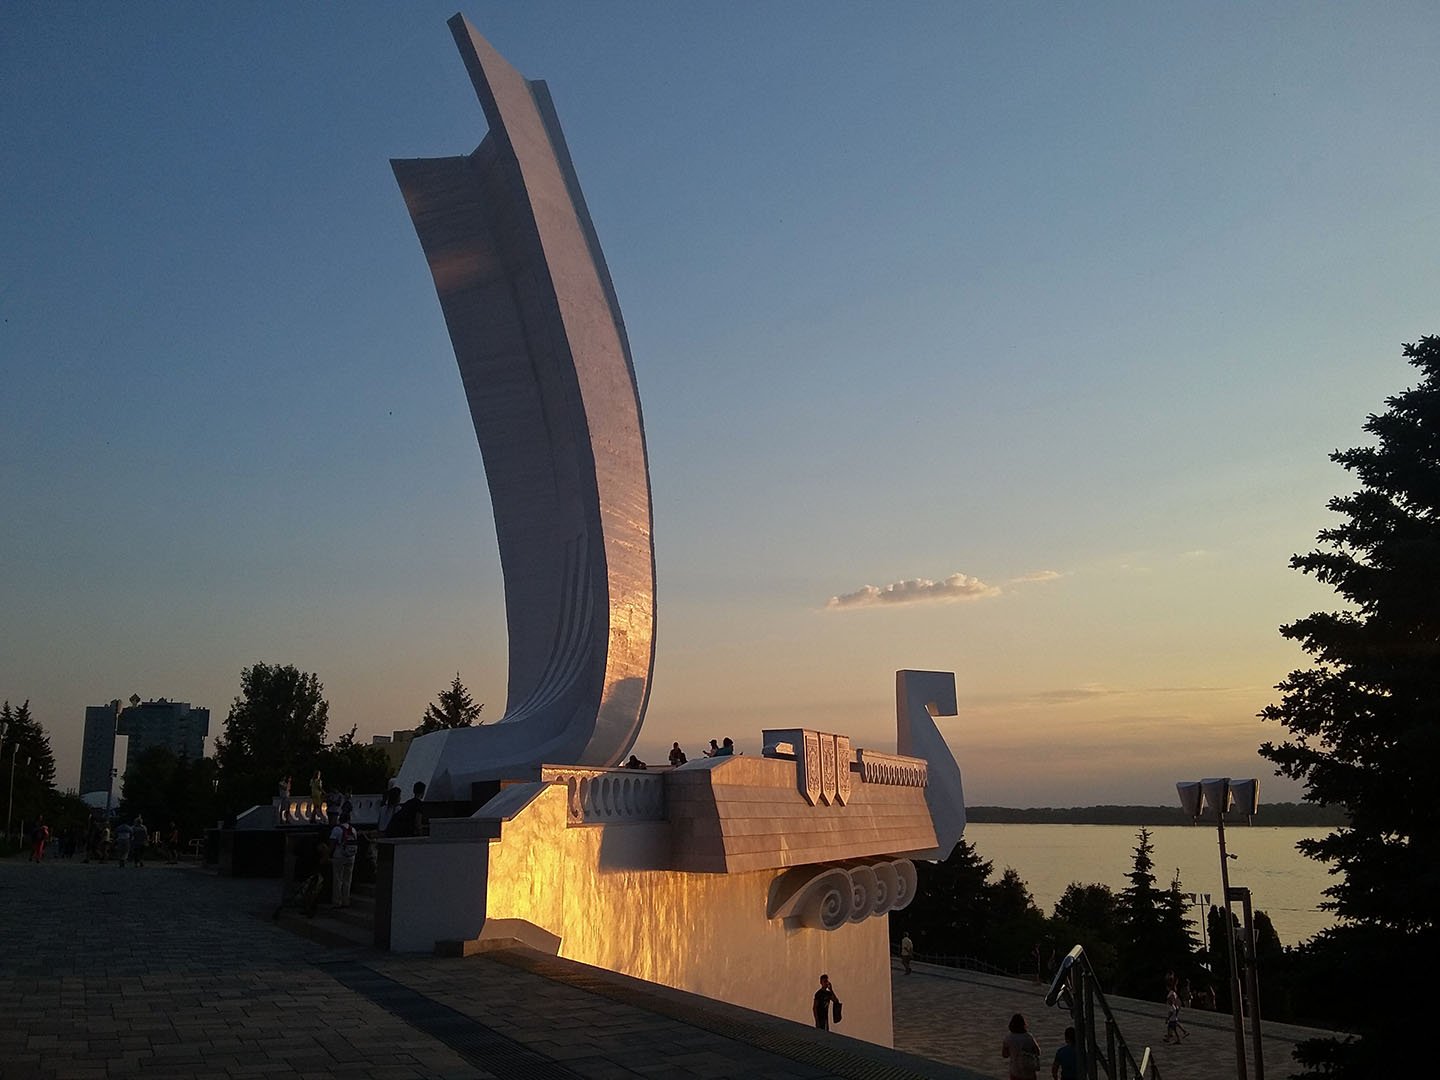 Памятник ладья. Ладья Самара набережная. Памятник Ладья в Самаре на набережной.